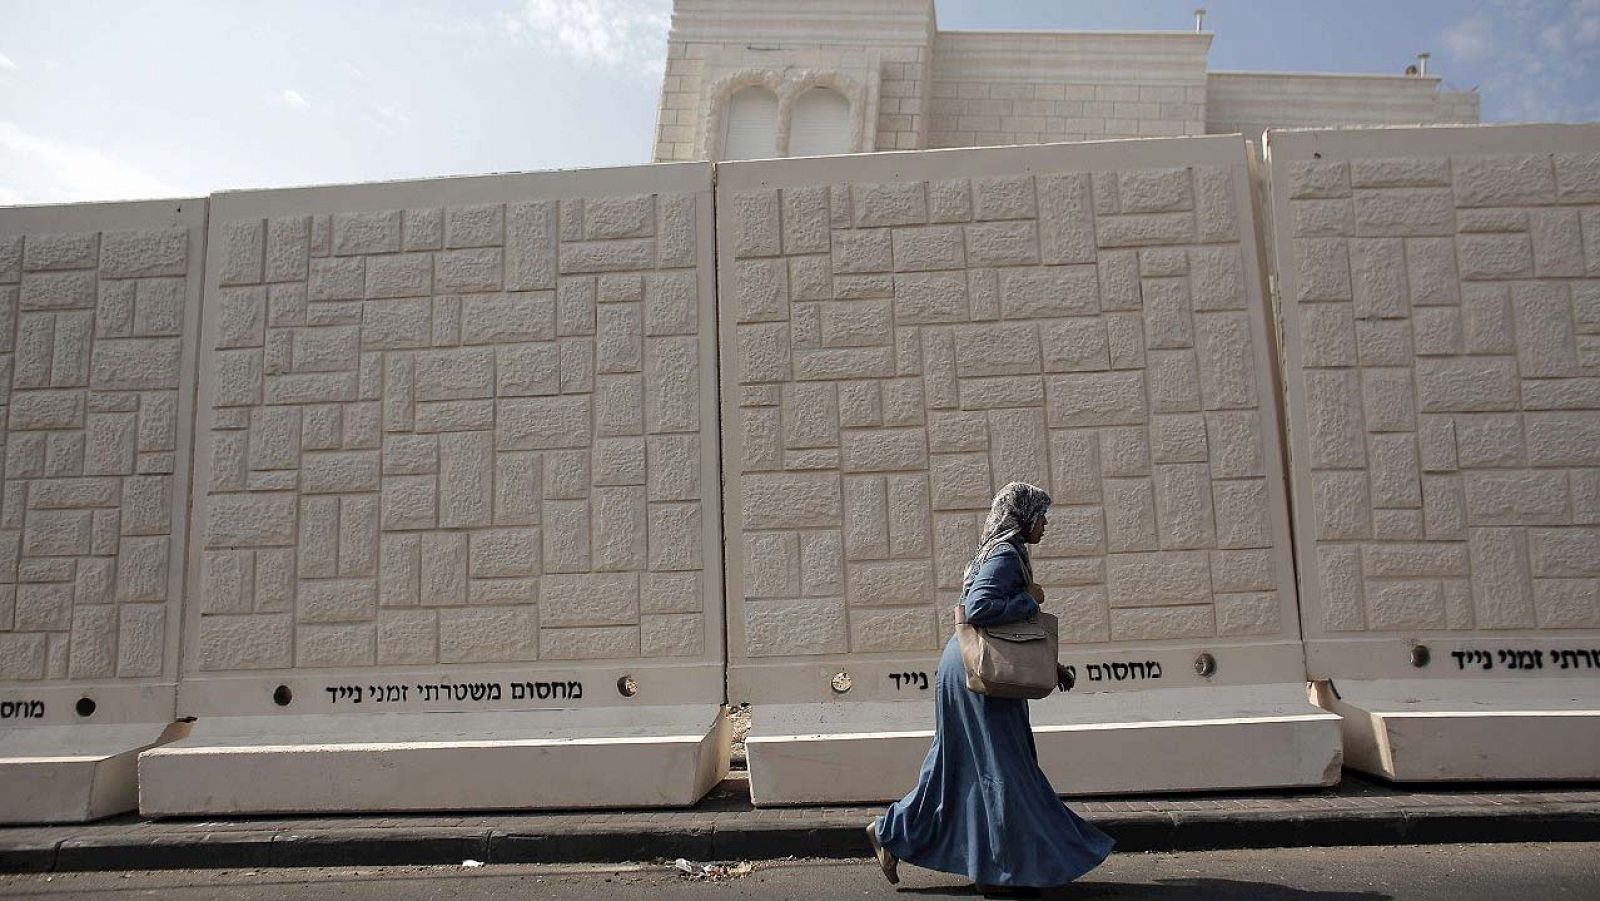 Una mujer palestina pasa junto a uno de los muros de cemento erigidos por la Policía israelí en el barrio de Yabal Mukaber, en Jerusalén Este. En el muro, en hebreo, se puede leer: "Barrera policial de separación temporal"